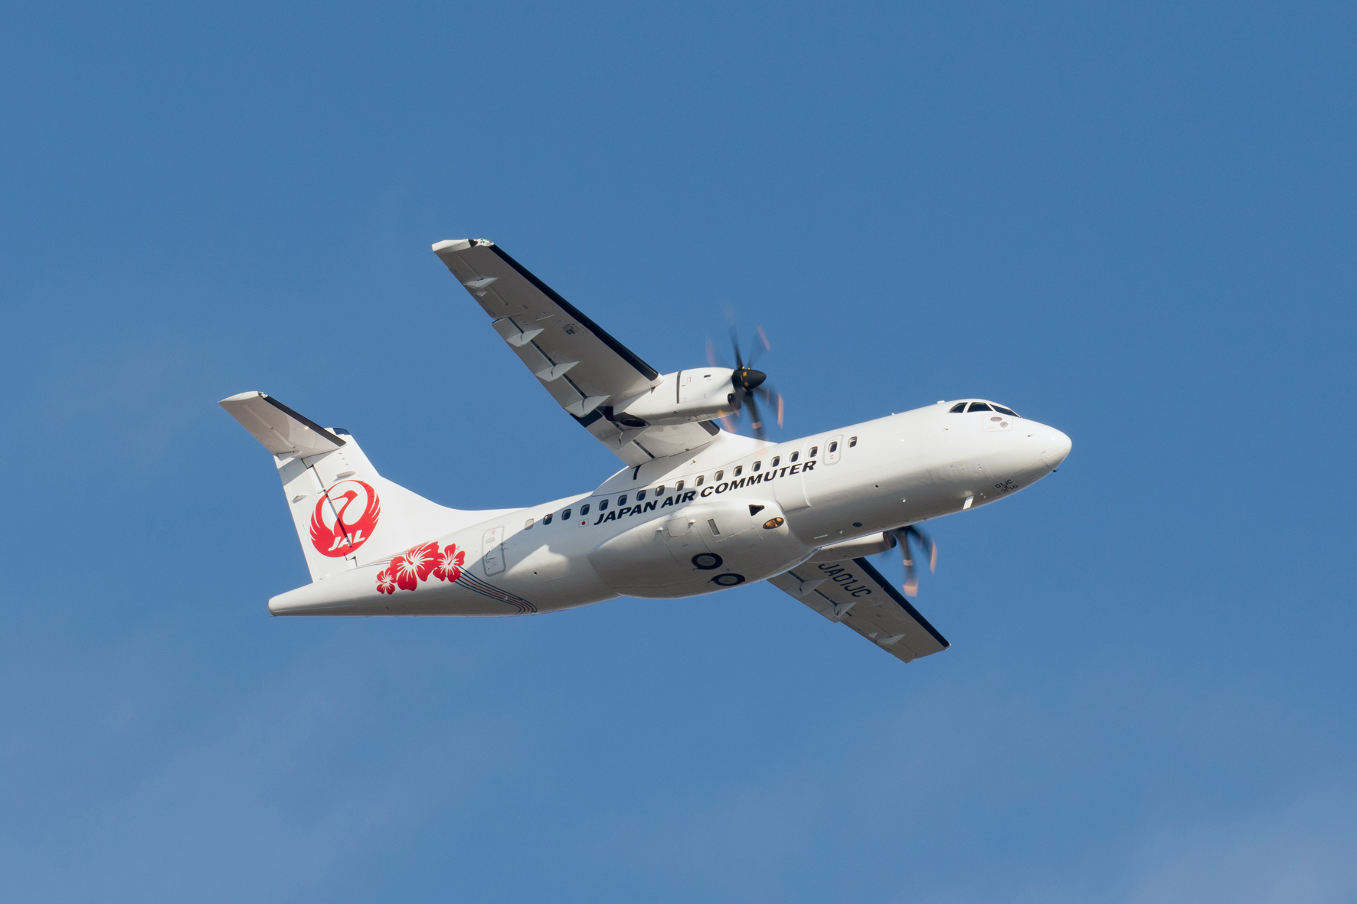 L'ATR 72-600 arrive au Japon